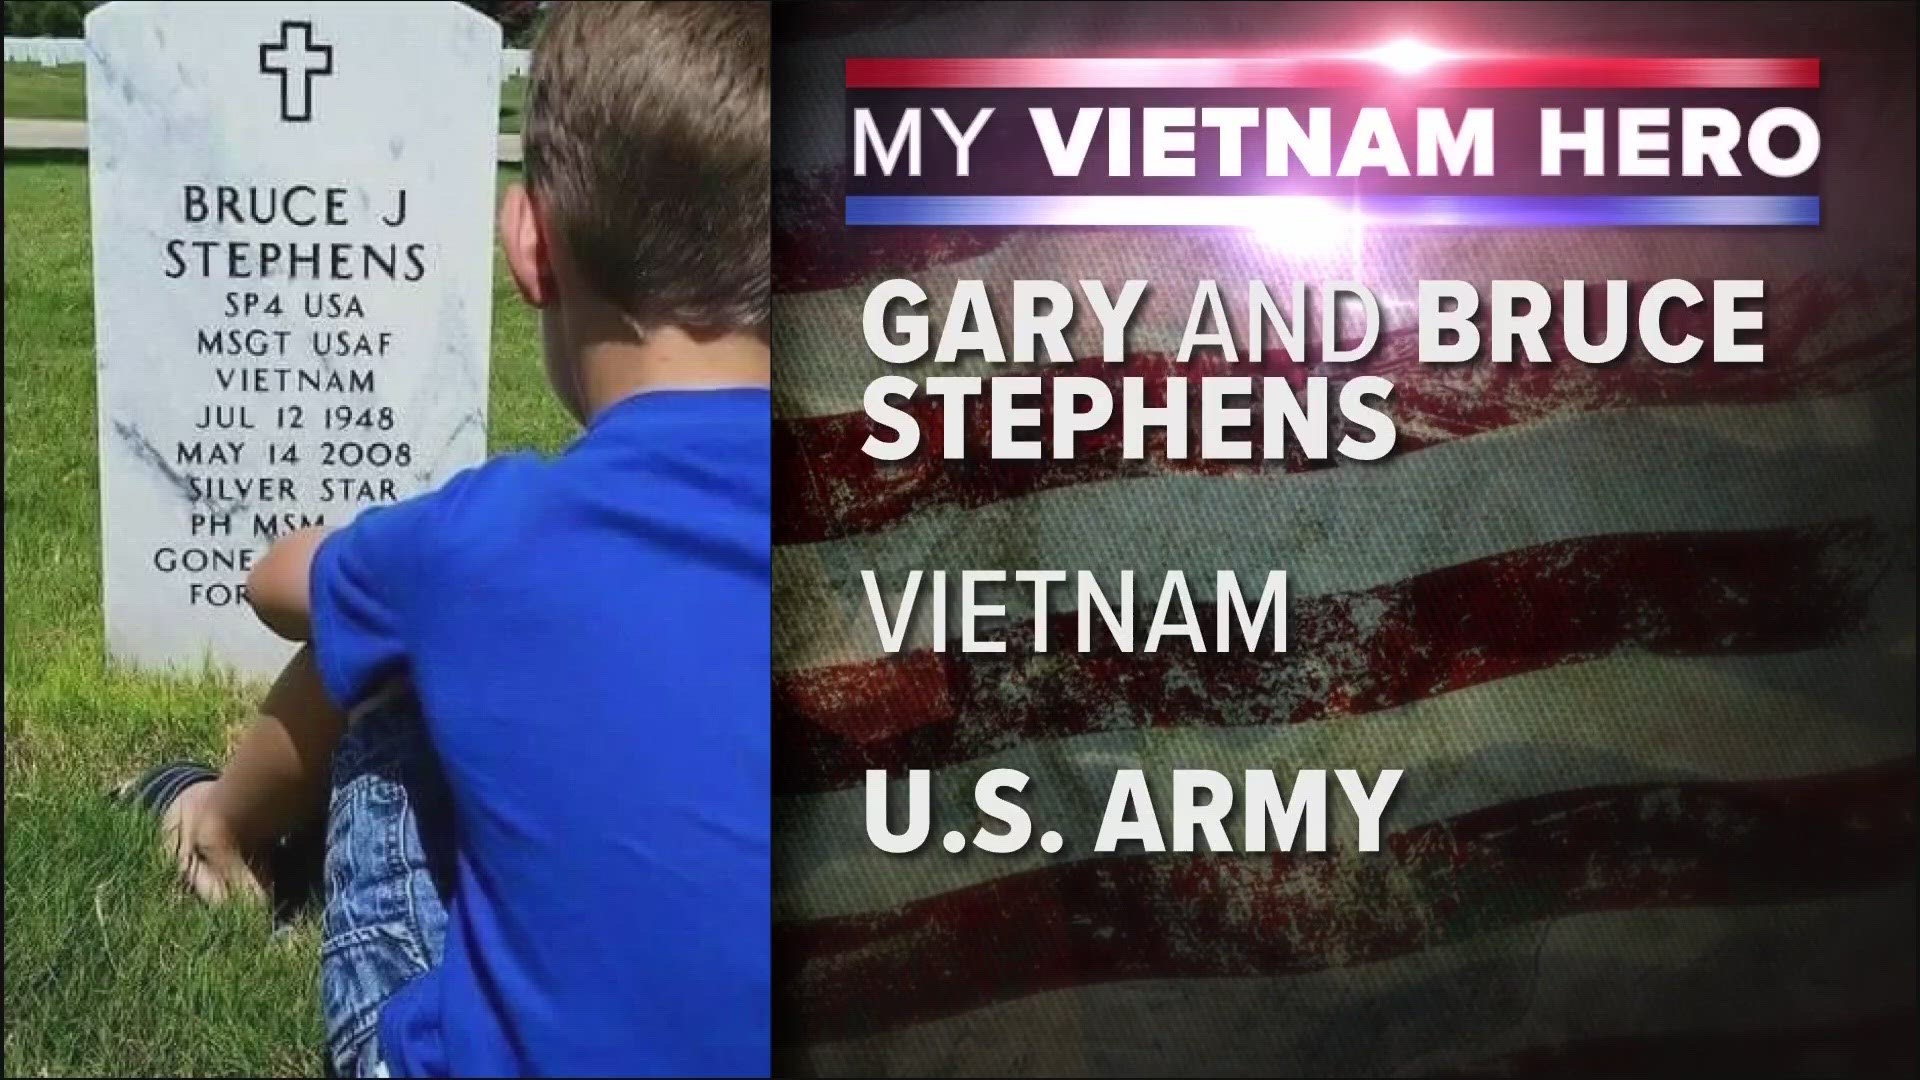 My Vietnam Hero: Gary and Bruce Stephens